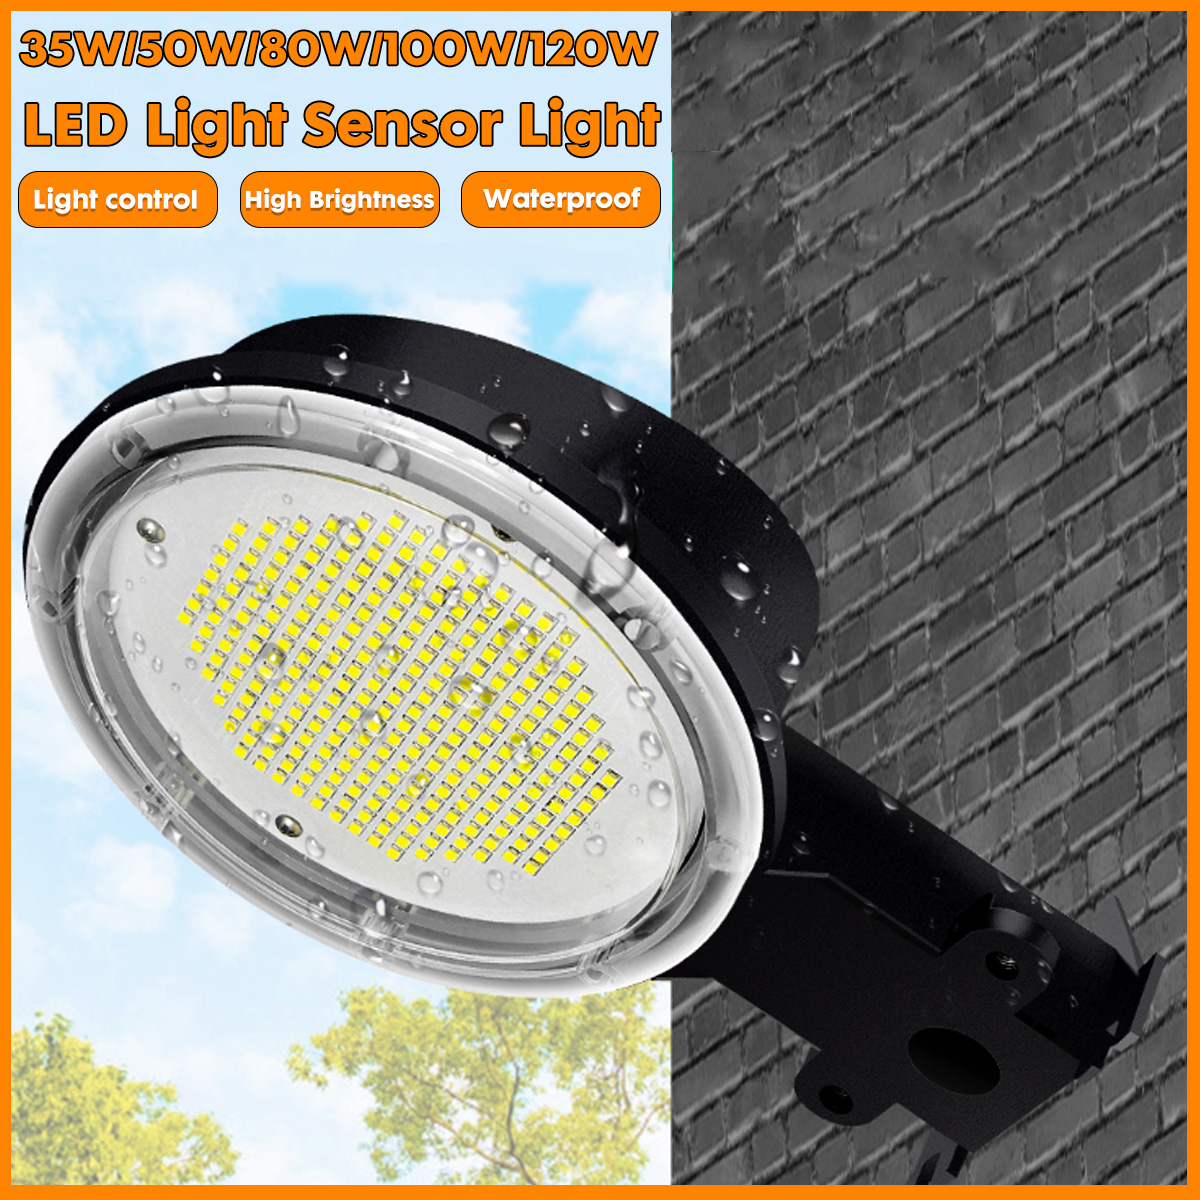 35W-50W-80W-100W-120W-LED-Solar-Street-Light-Motion-Sensor-Outdoor-IP65-Commercial-Garden-Lamp-1738426-1